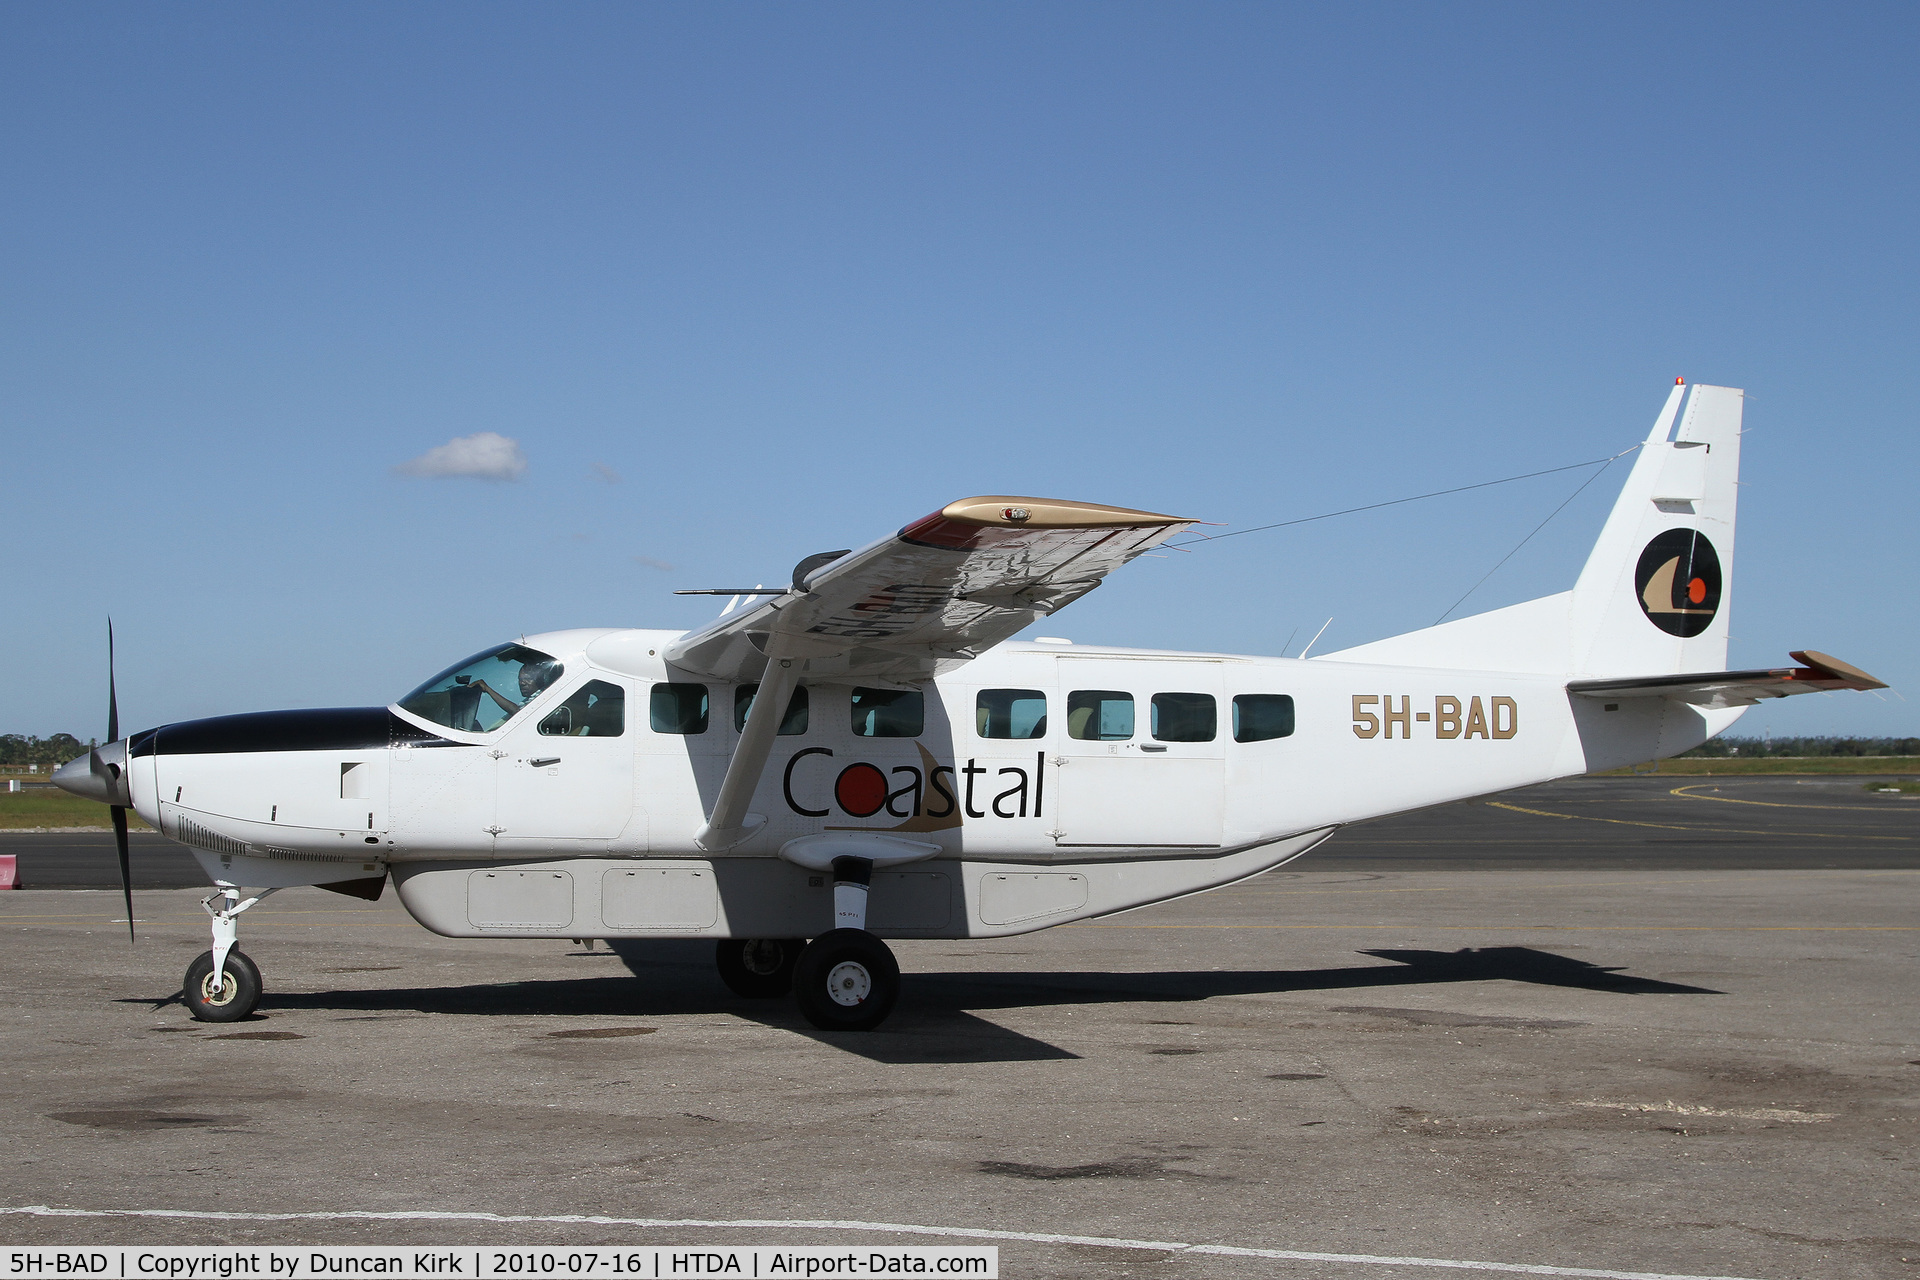 5H-BAD, 1996 Cessna 208B Grand Caravan C/N 208B0586, Arriving at the commuter terminal